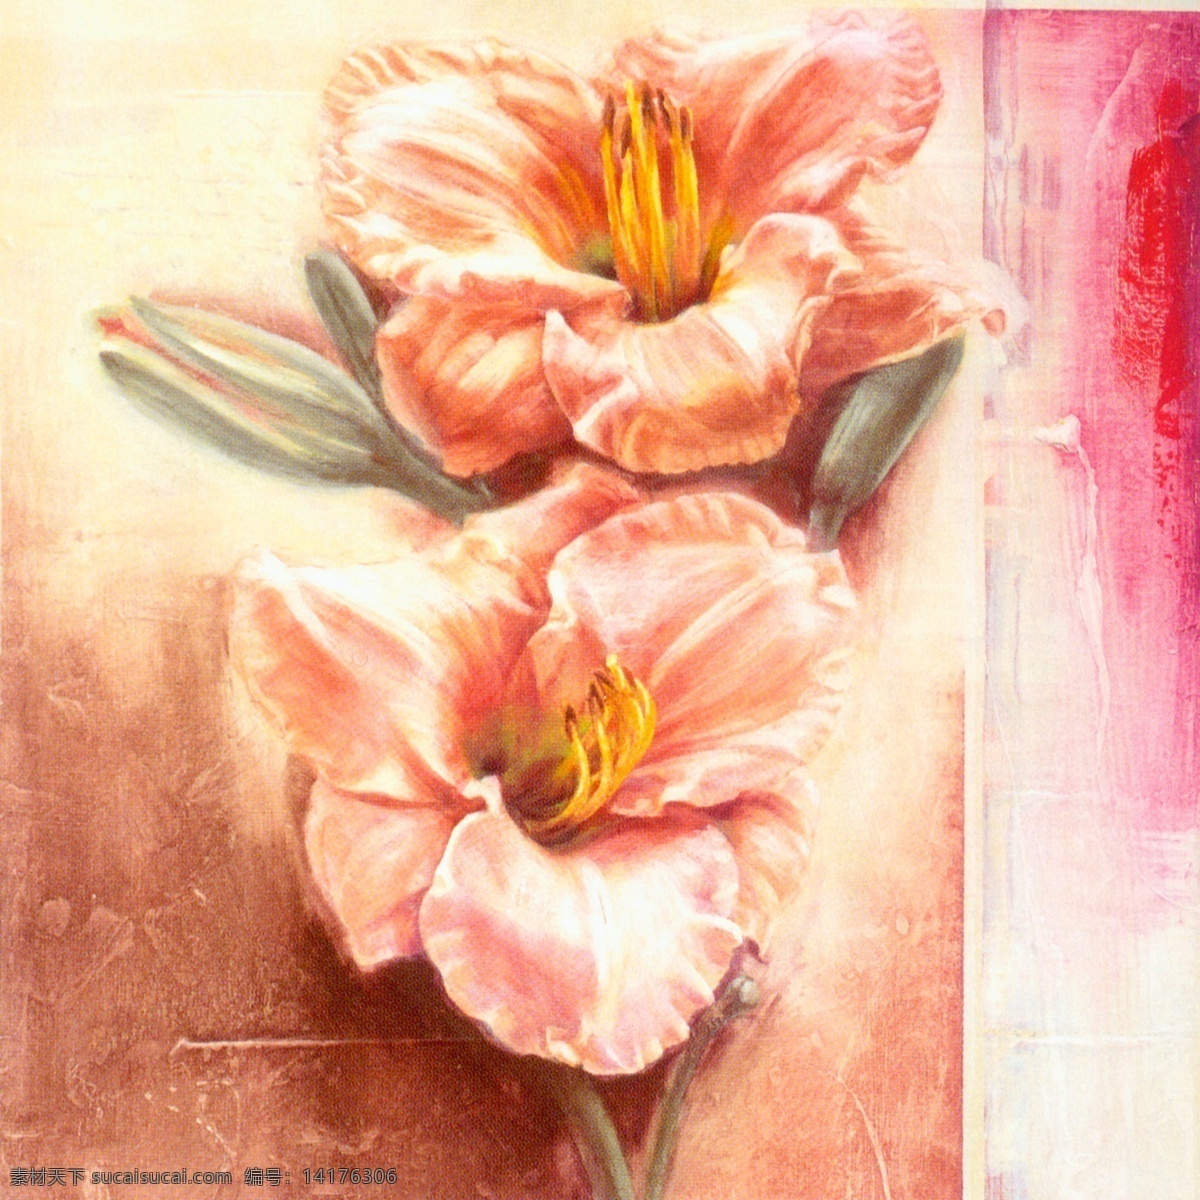 花卉油画 60厘米 x 花 花卉 手绘 油画 装饰画 无框画 扫描 大图 清晰 写真 喷绘 印刷 植物 花朵 抽象 写生 百合 特写 绘画书法 文化艺术